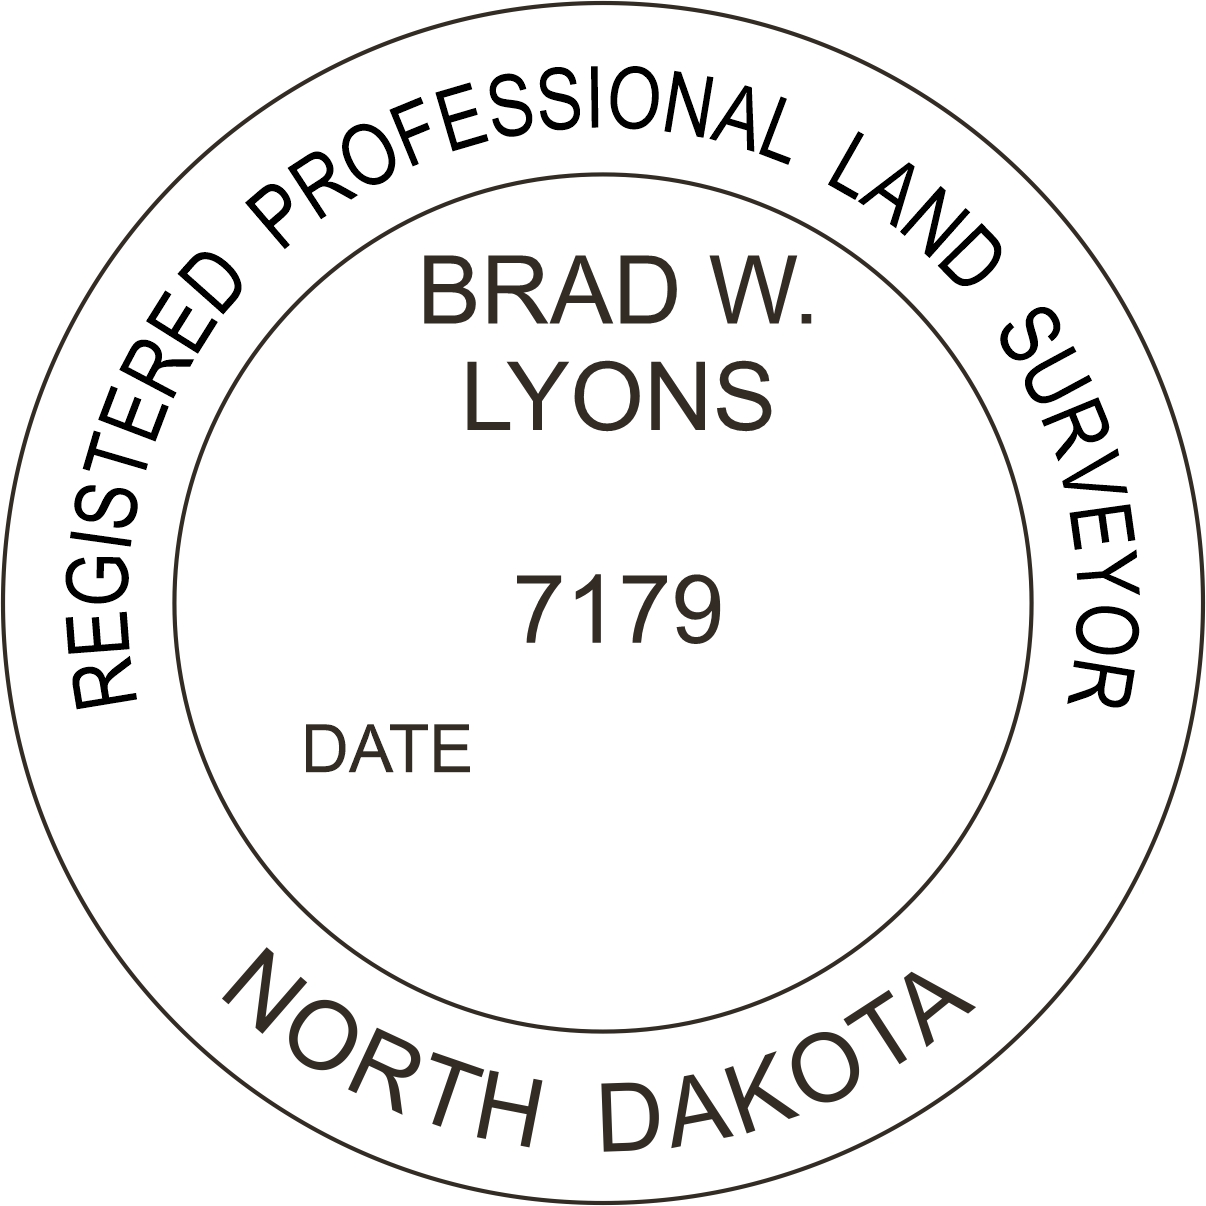 Land Surveyor Seal - Desk - North Dakota